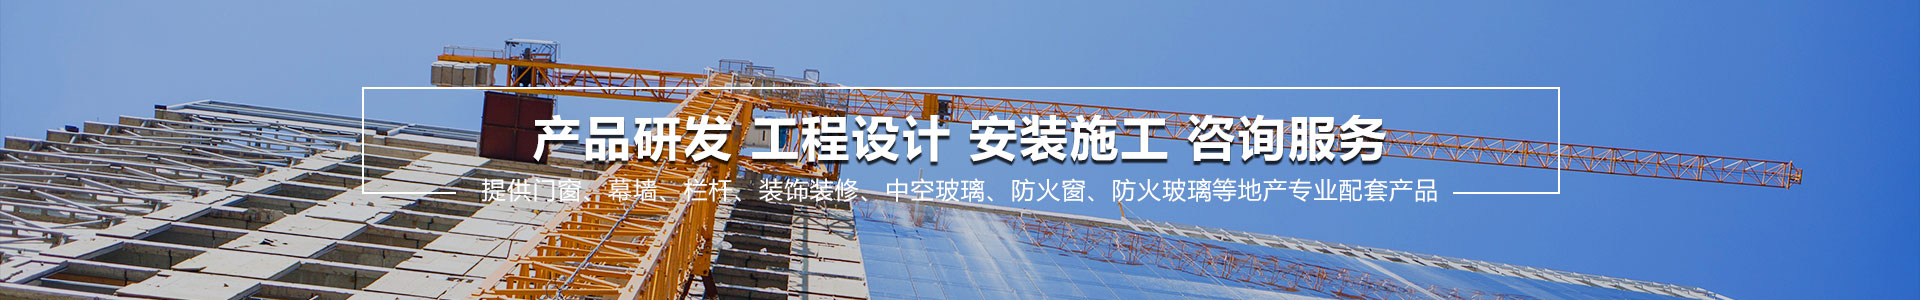 关于当前产品aoa大圣软件下载·(中国)官方网站的成功案例等相关图片